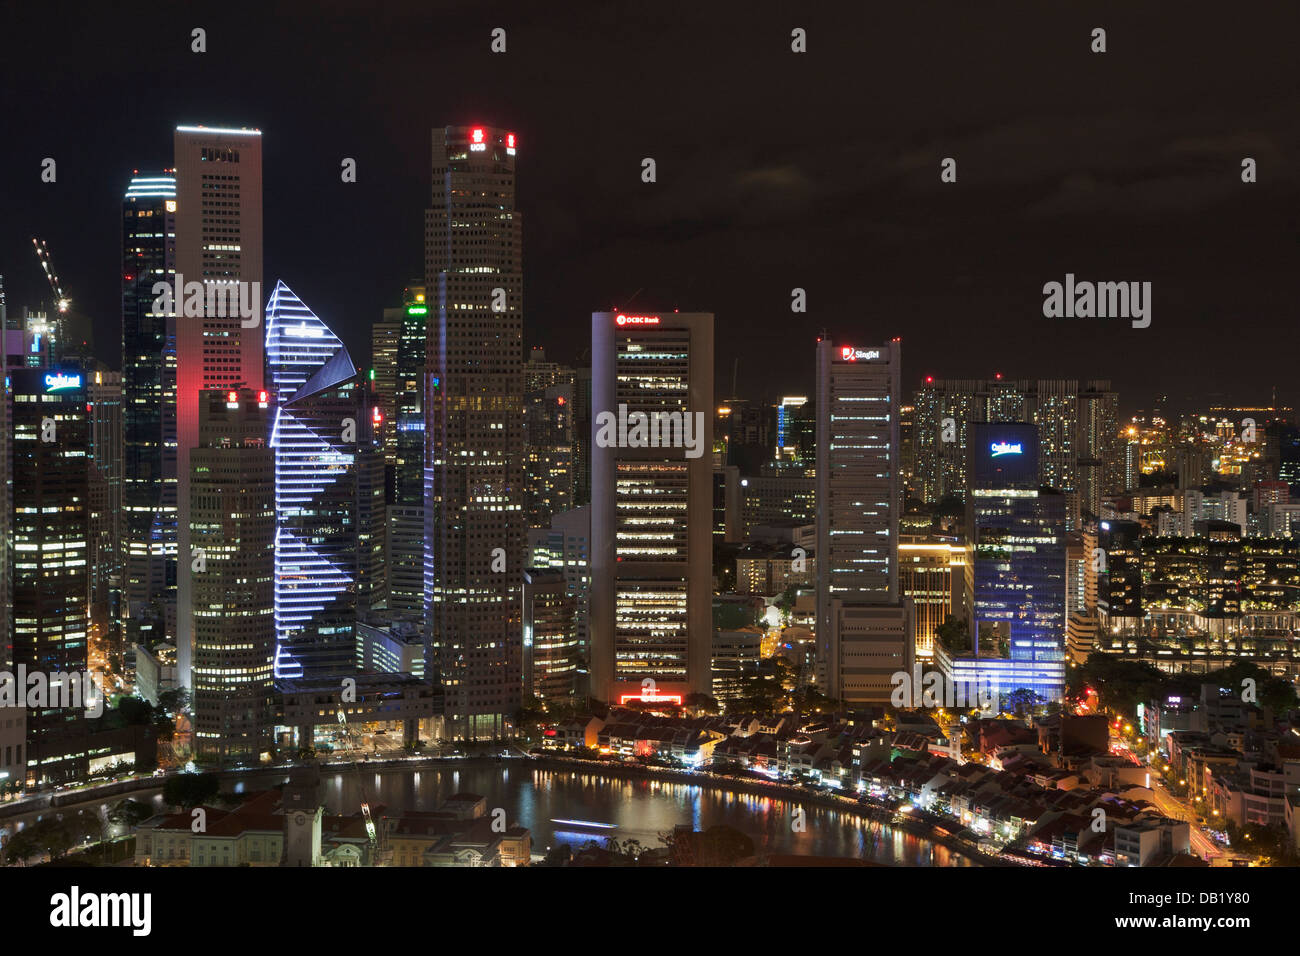 Singapore skyline at night Stock Photo